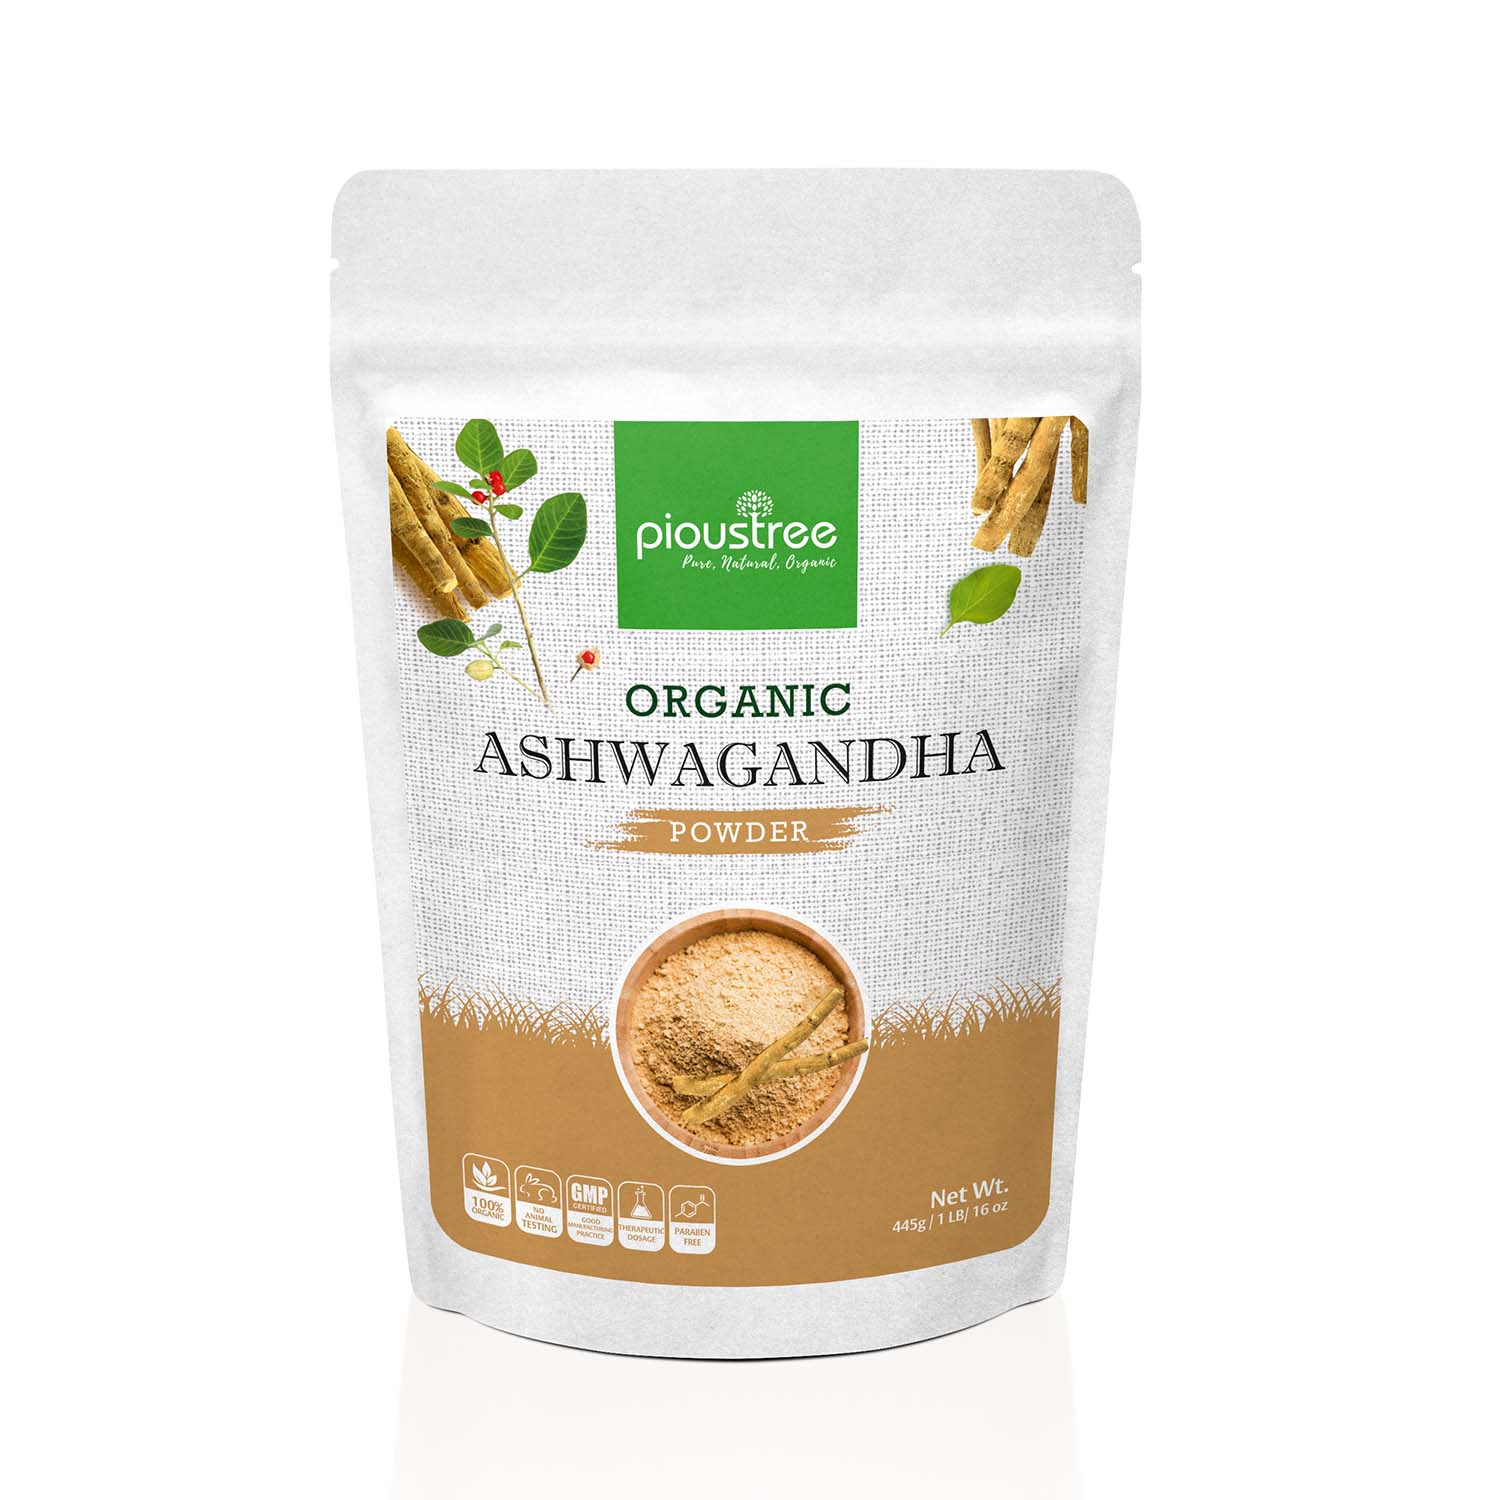 ashwagandha powder when to take